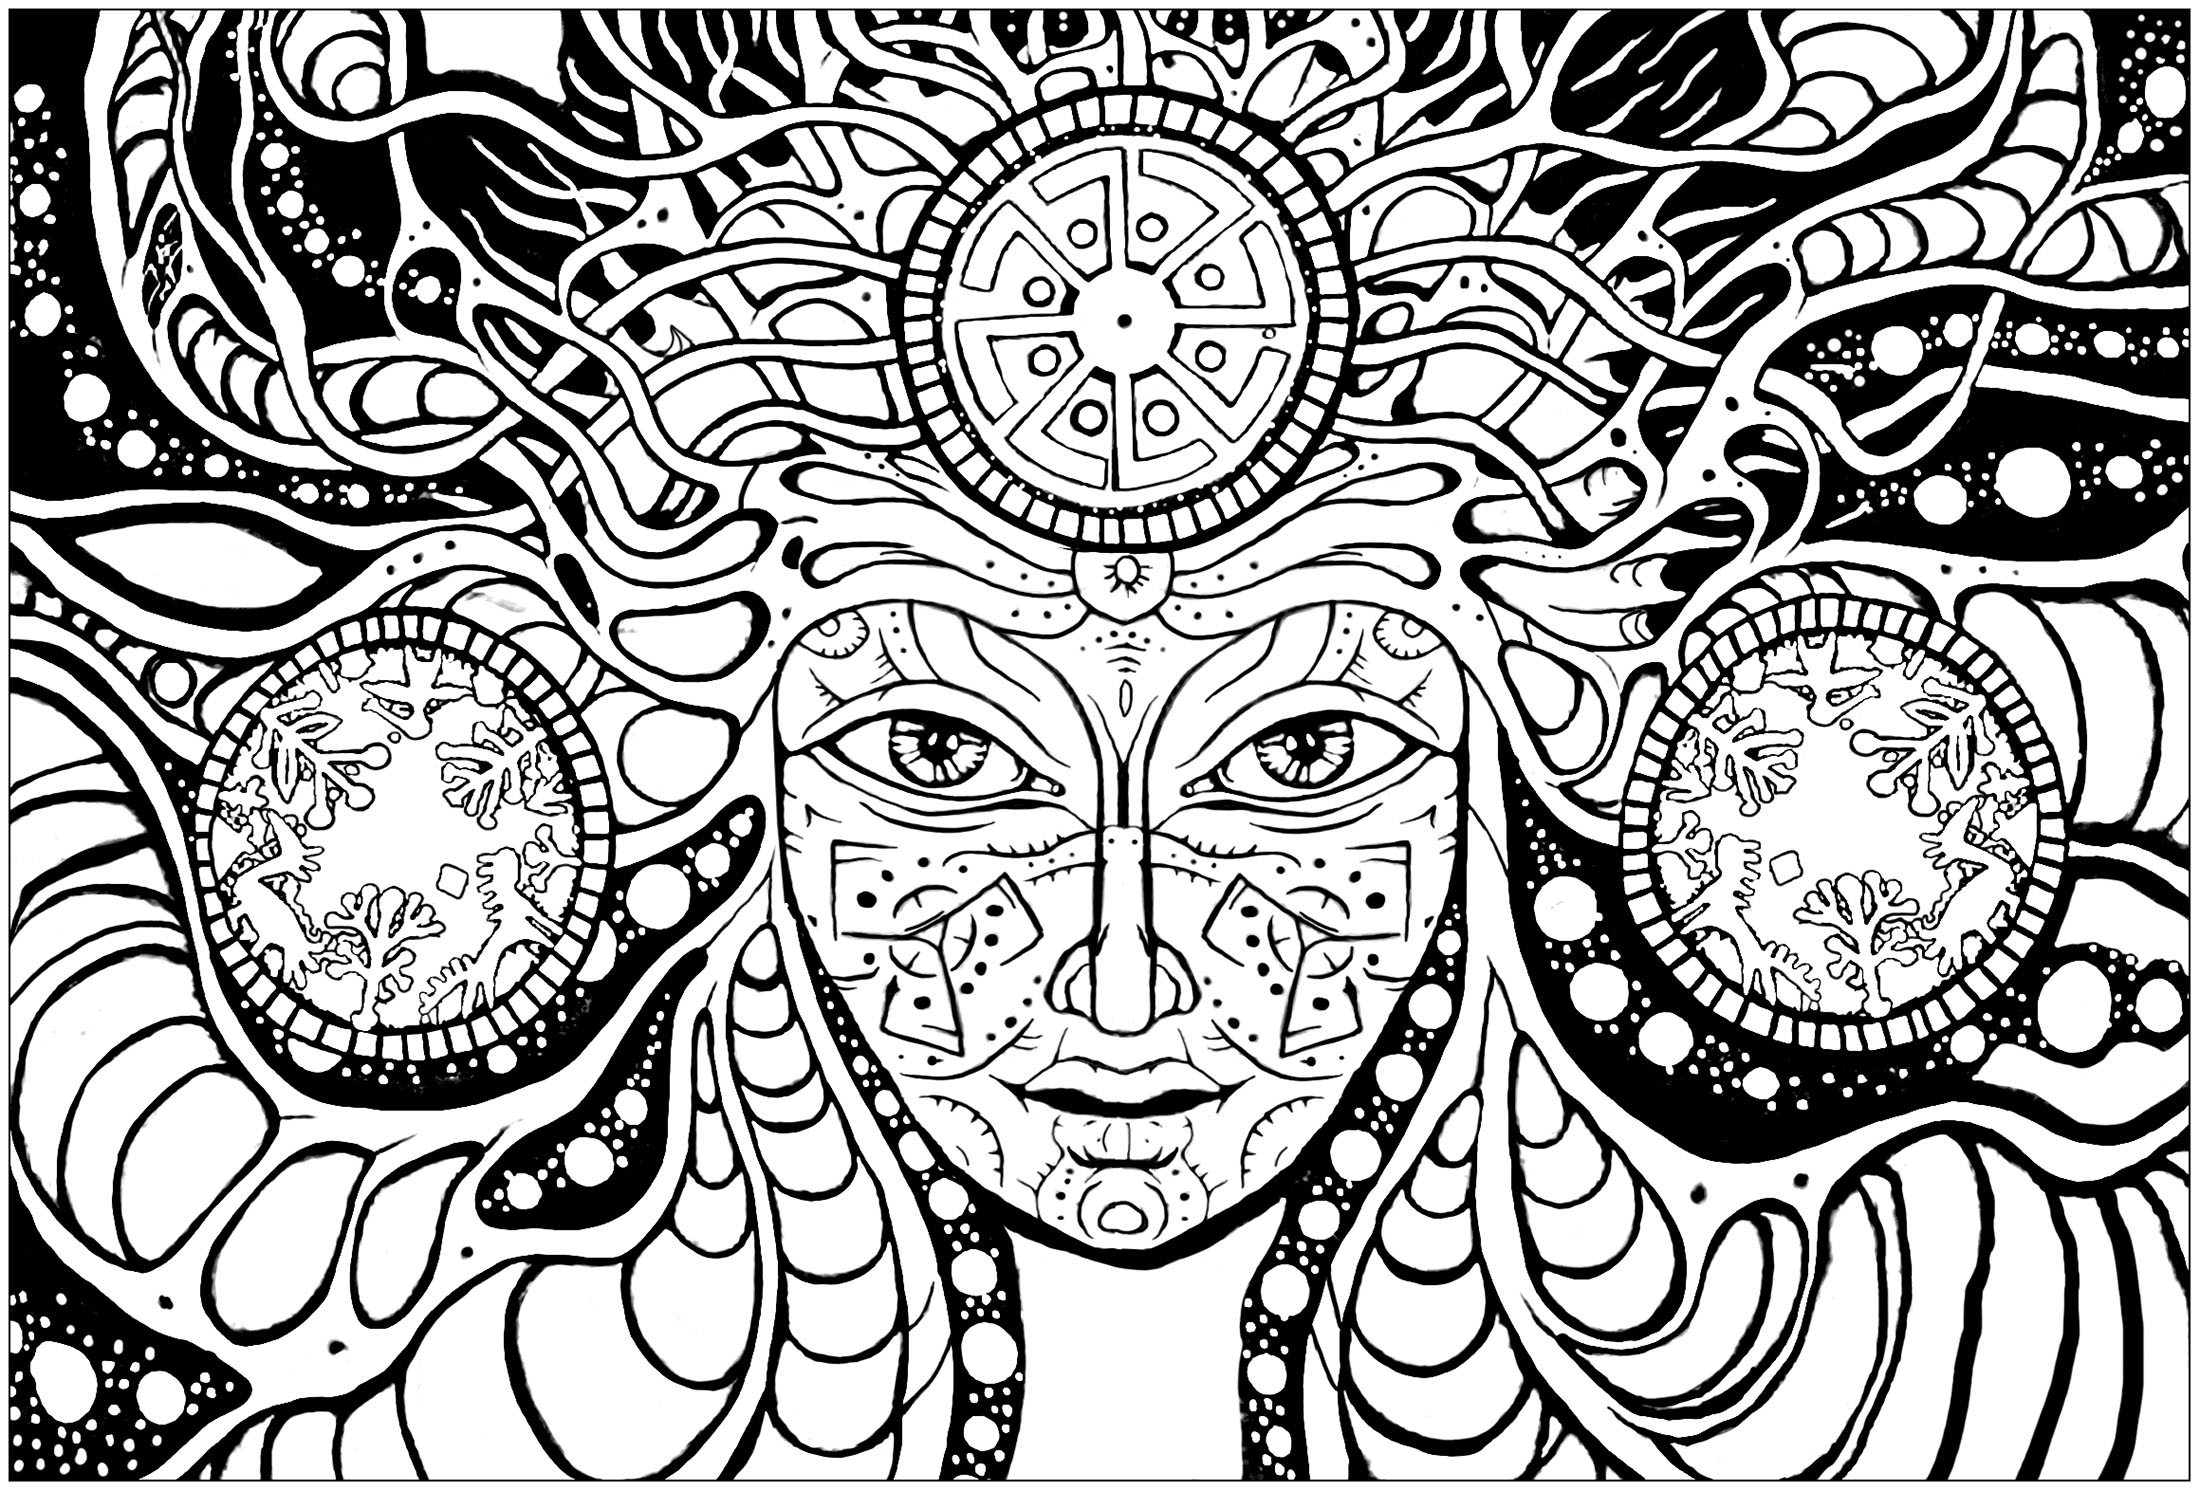 Mulher psicadélica: colorir o seu rosto encantador e os estranhos padrões que a rodeiam